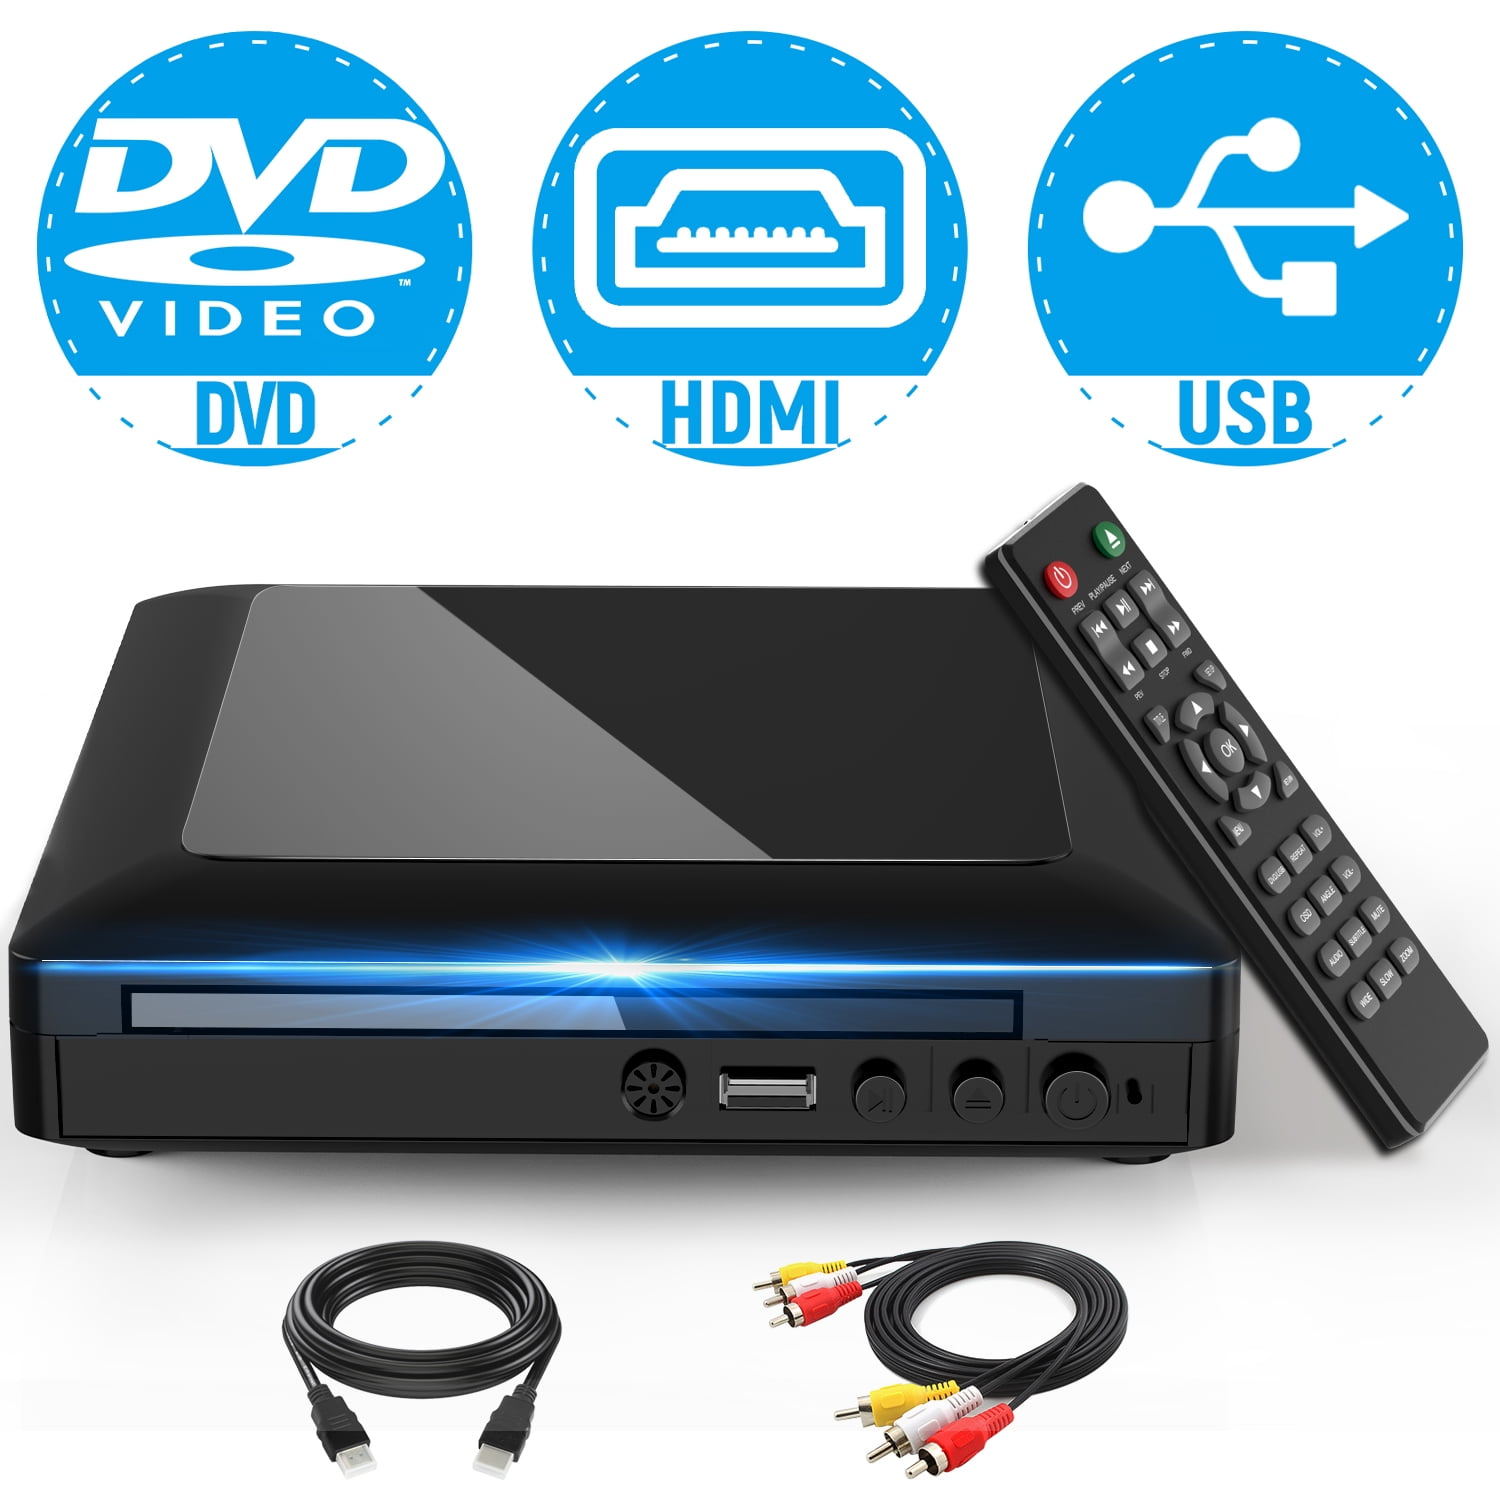 Proscan Lecteur DVD Proscan HDMI avec port USB pour la lecture